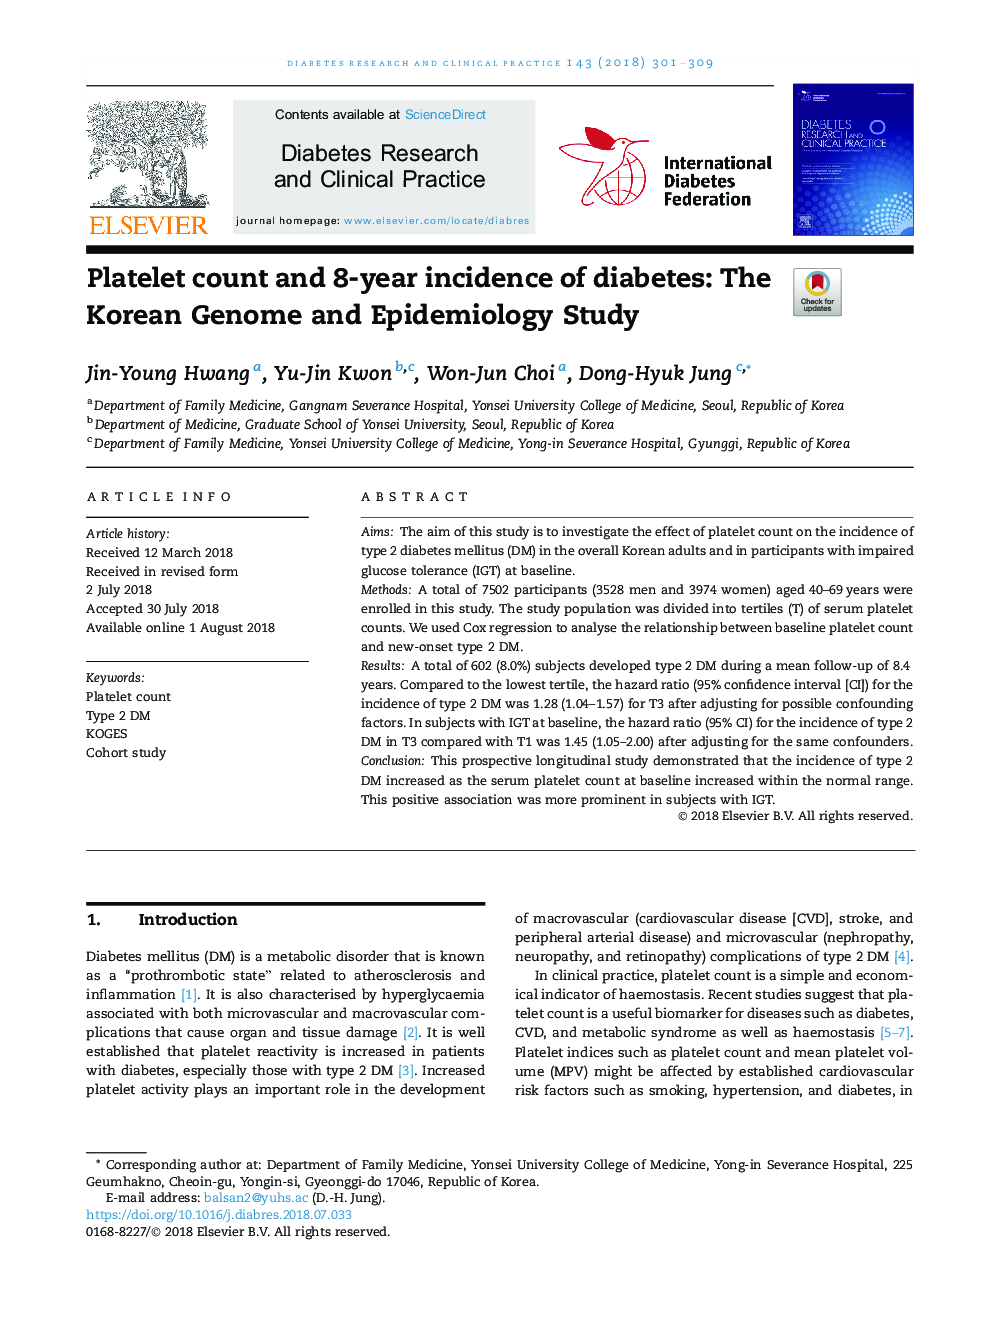 شمارش پلاکت ها و بروز 8 ساله دیابت: مطالعه ژنوم کره ای و اپیدمیولوژی 